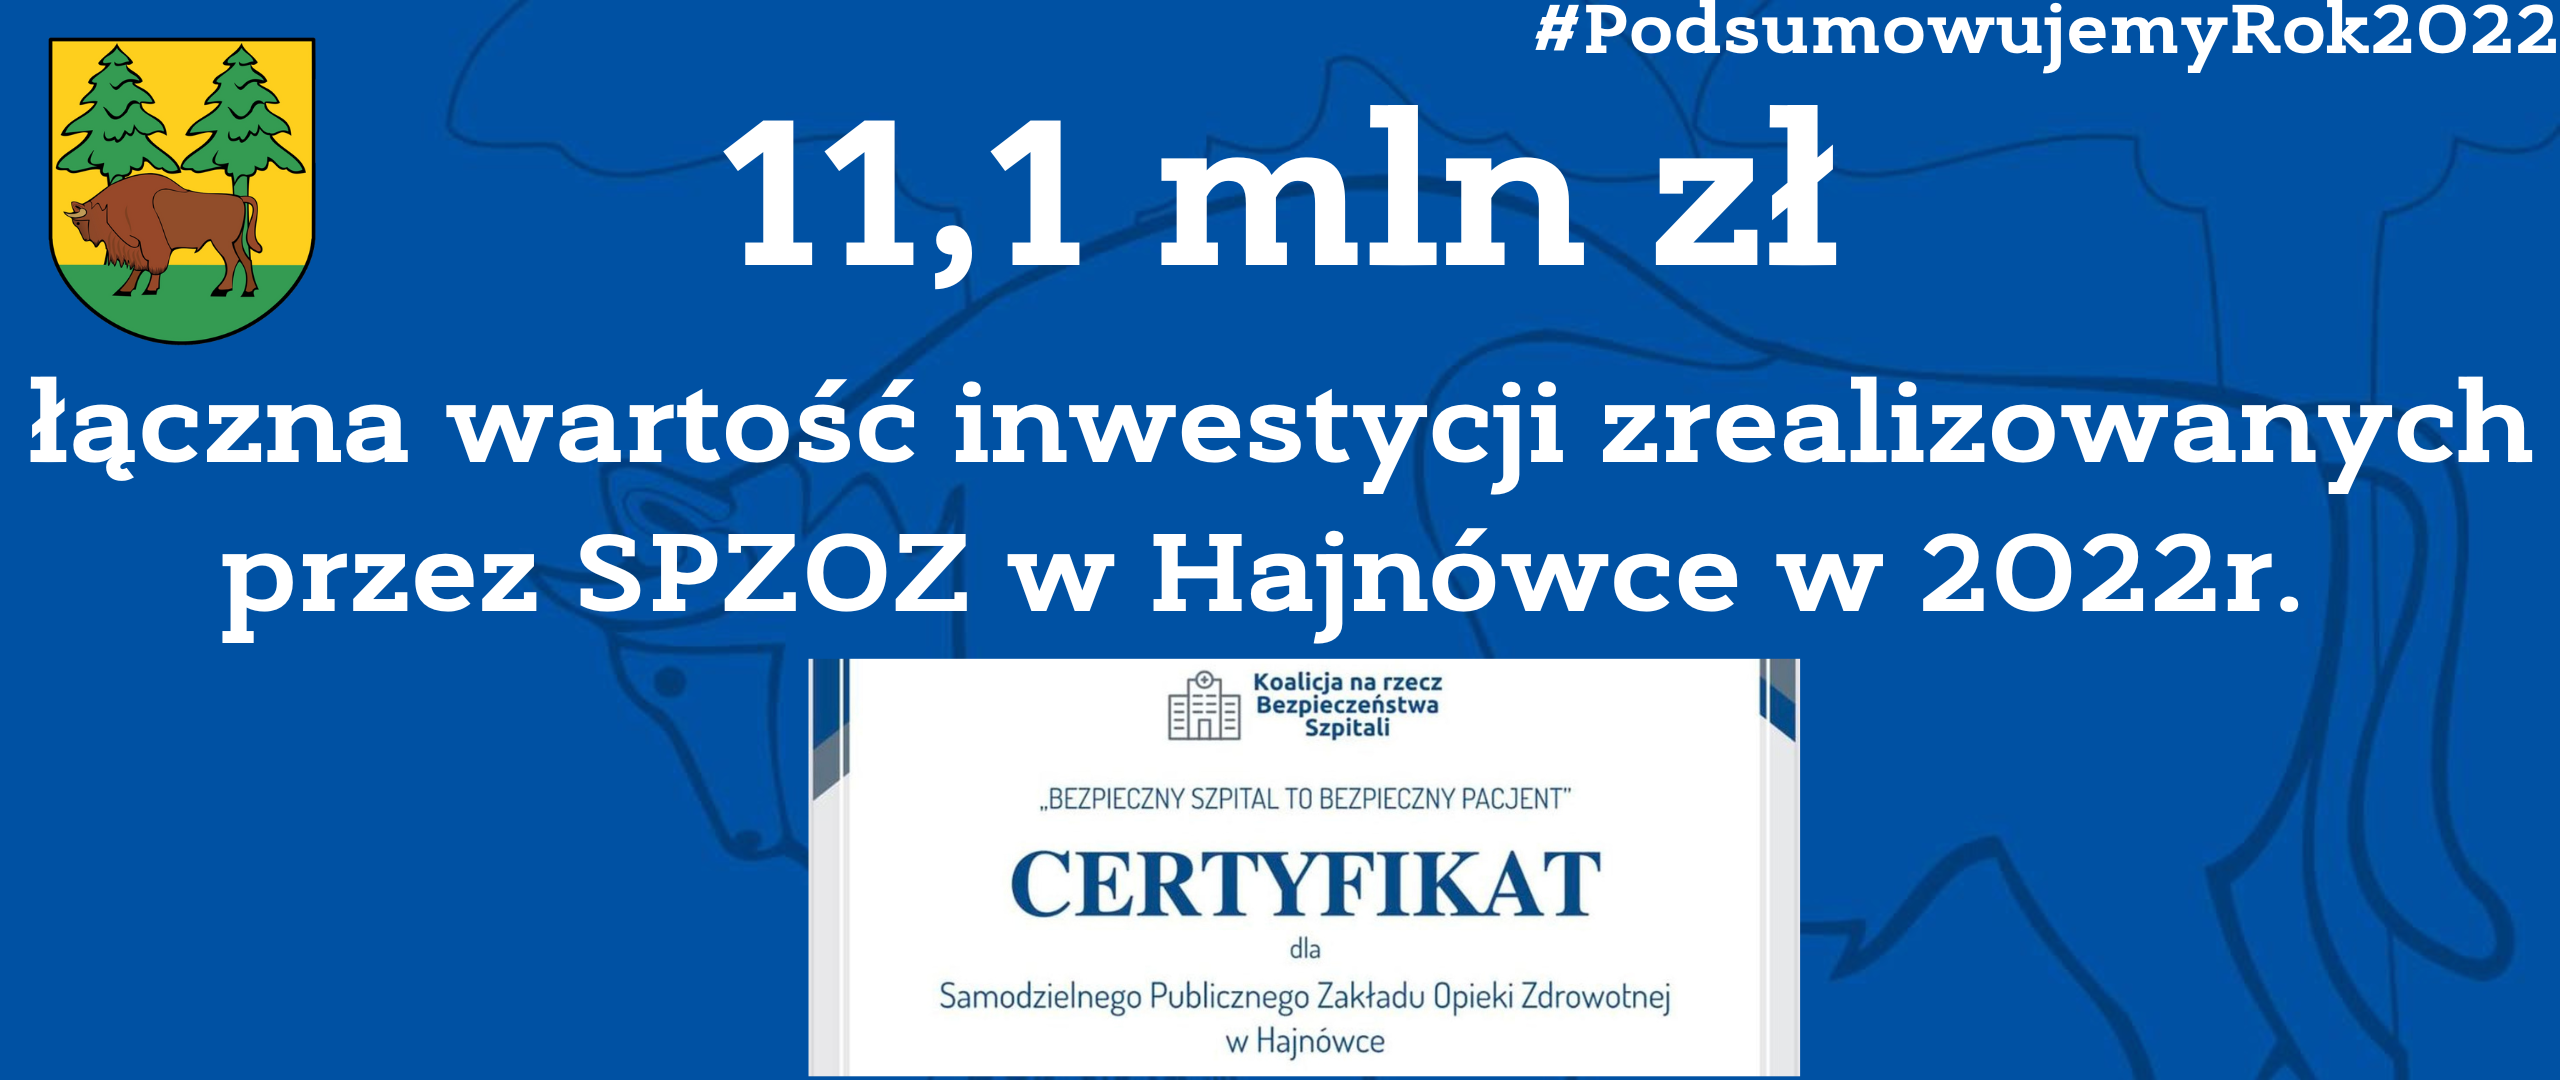 11,1 mln zł łączna wartość inwestycji zrealizowanych przez SP ZOZ w Hajnówce w 2022 r., u dołu certyfikat Bezpieczny szpital przyznany SP ZOZ w Hajnówce